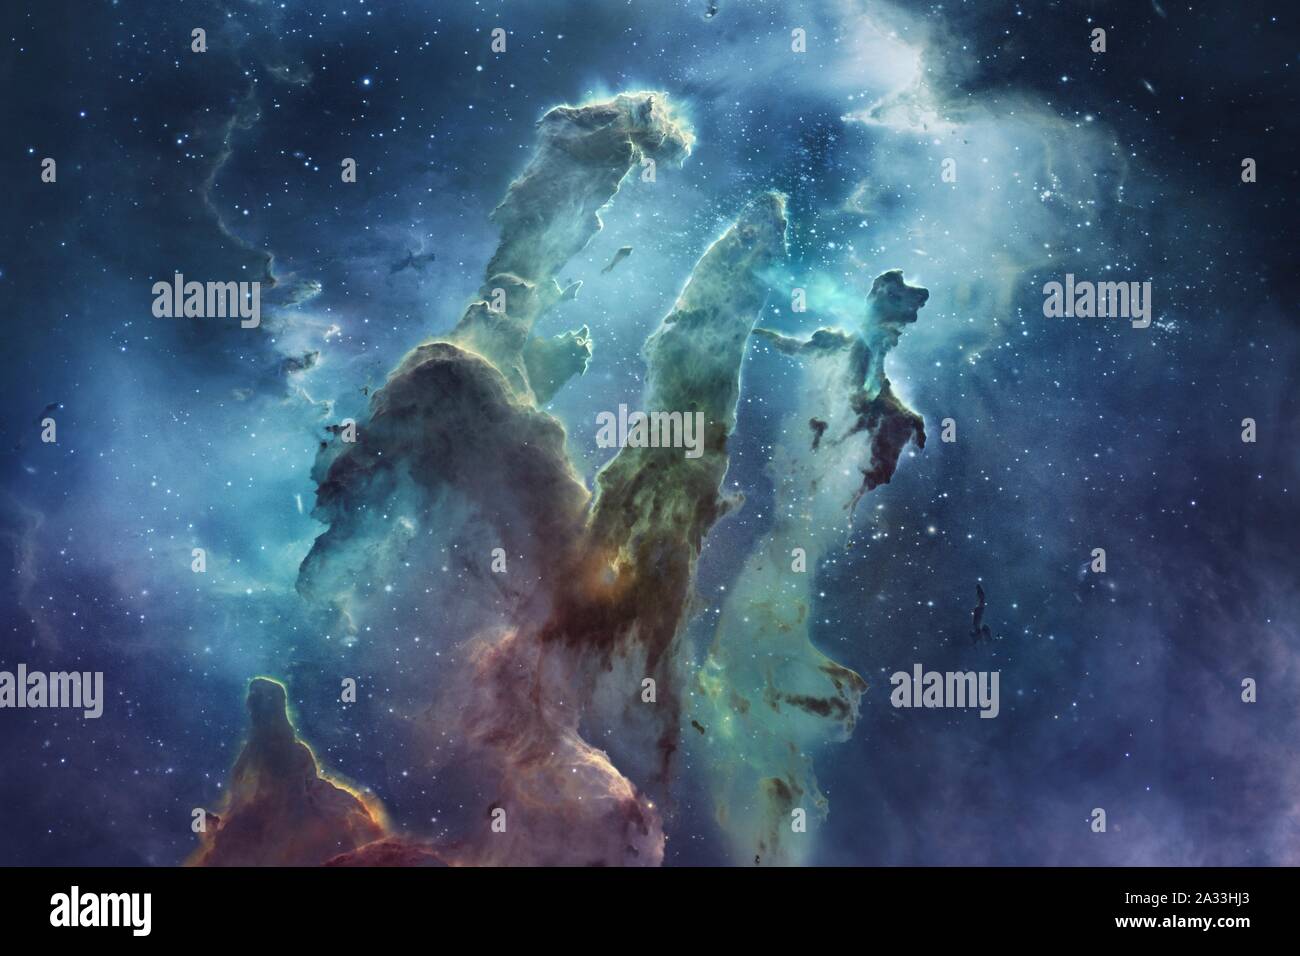 Eagle nebula, illustration Stock Photo